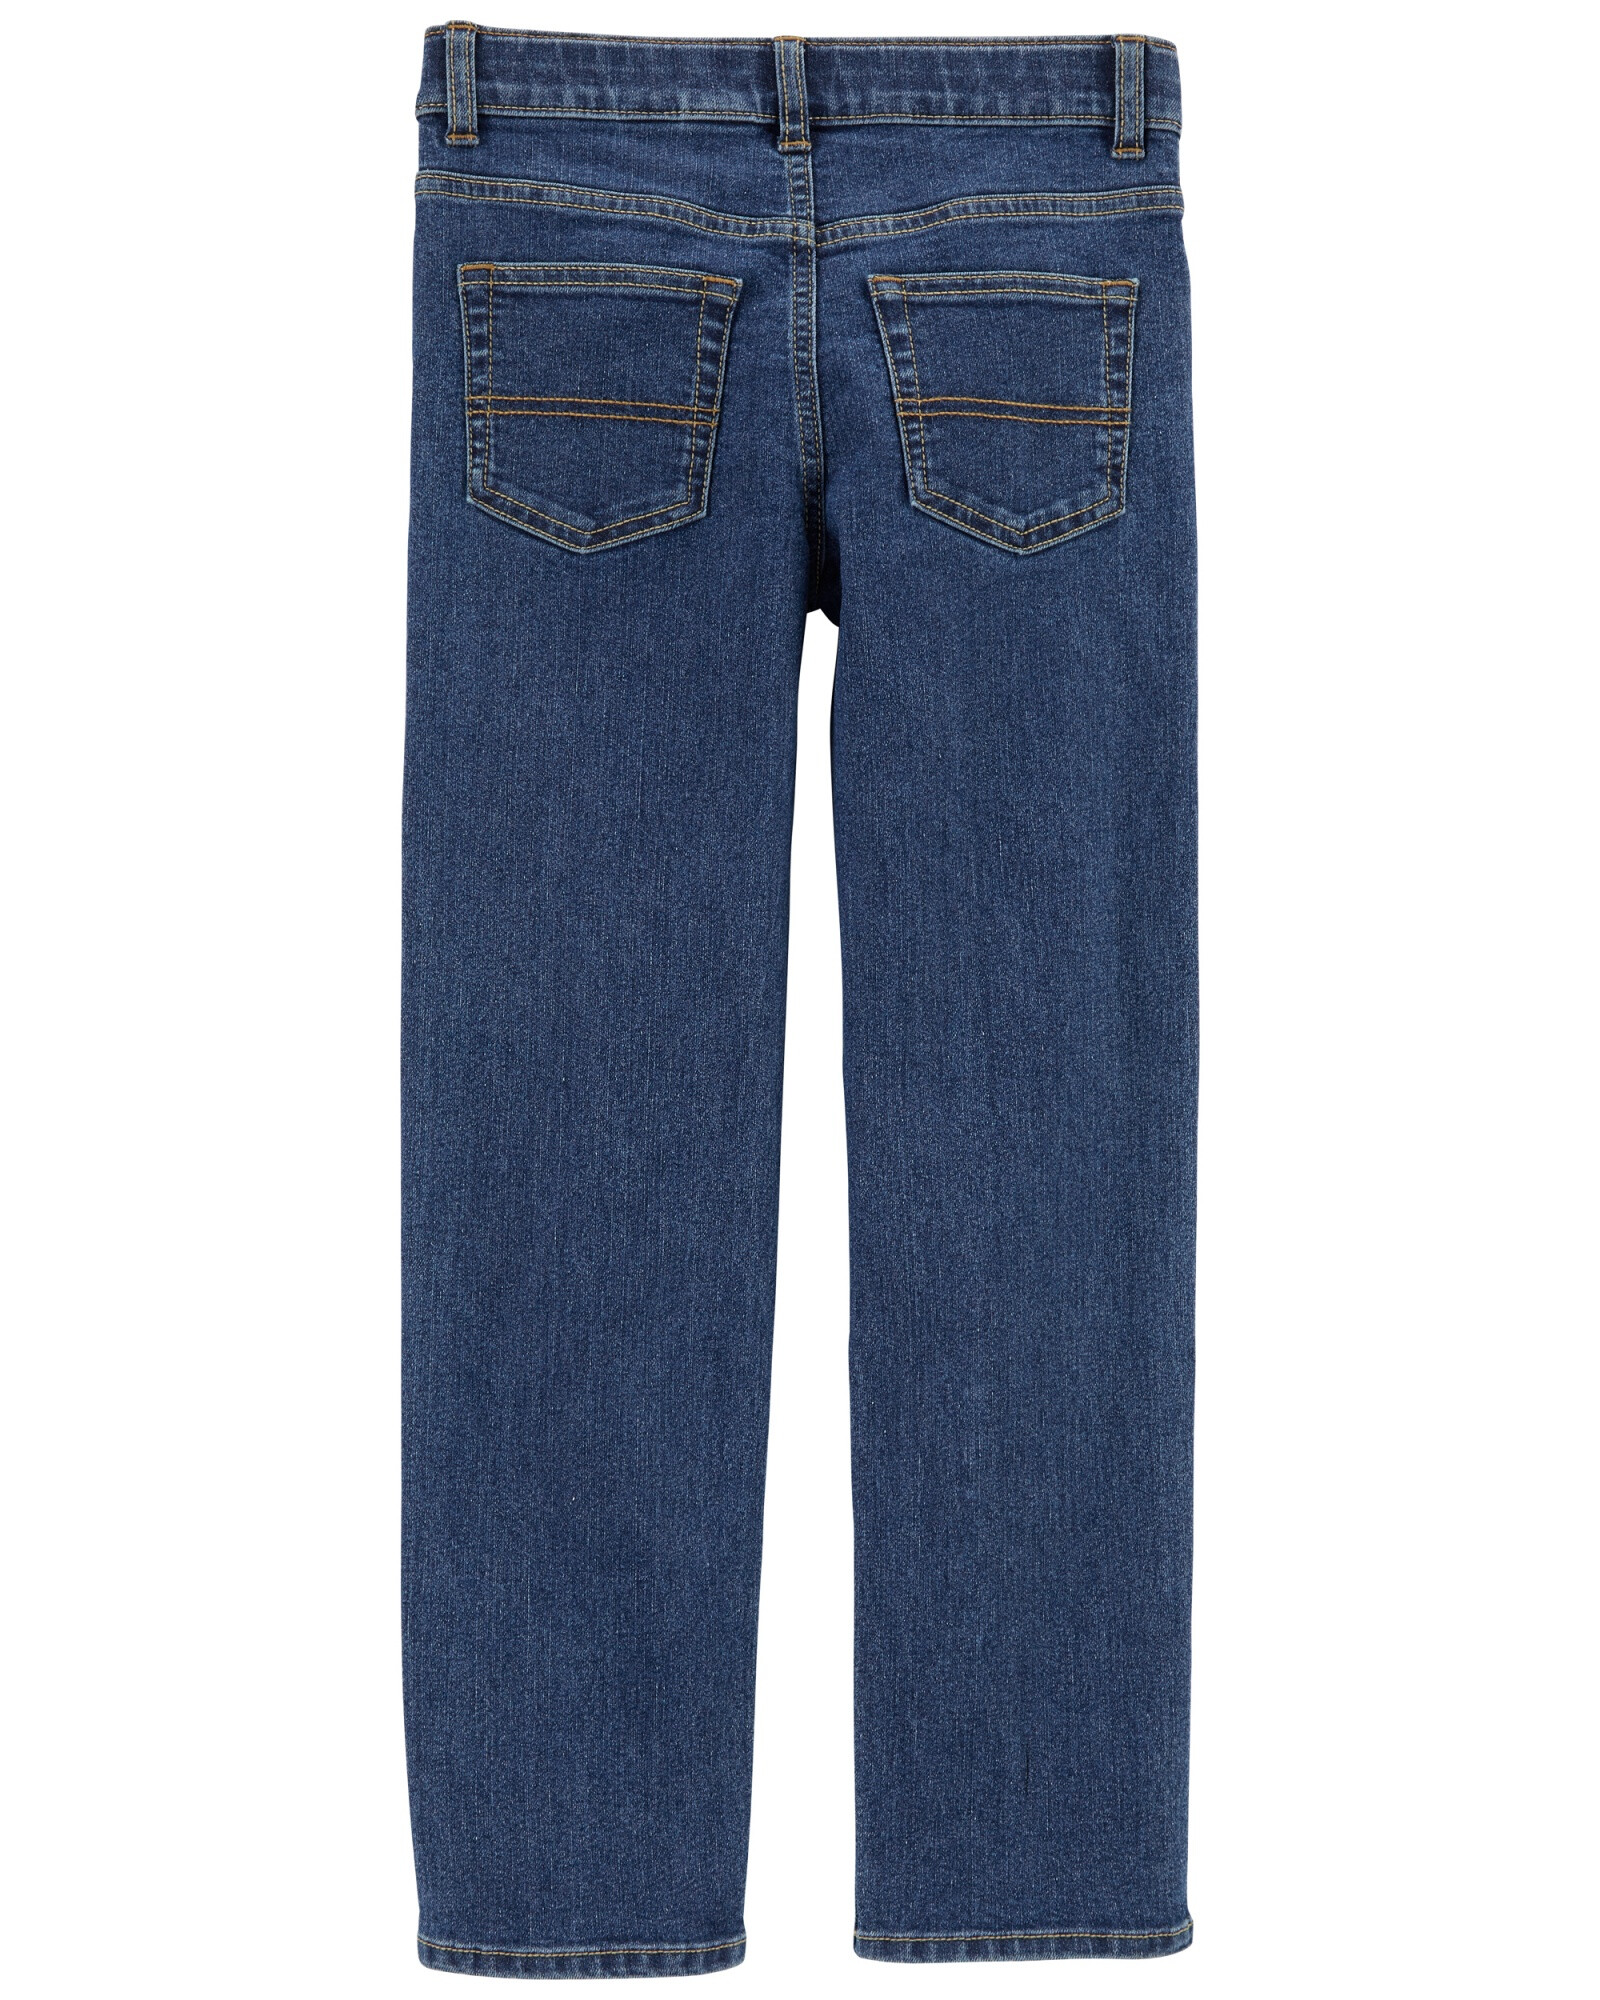 Pantalón de jean con detalles rasgados. Talles 4-14 Sin color